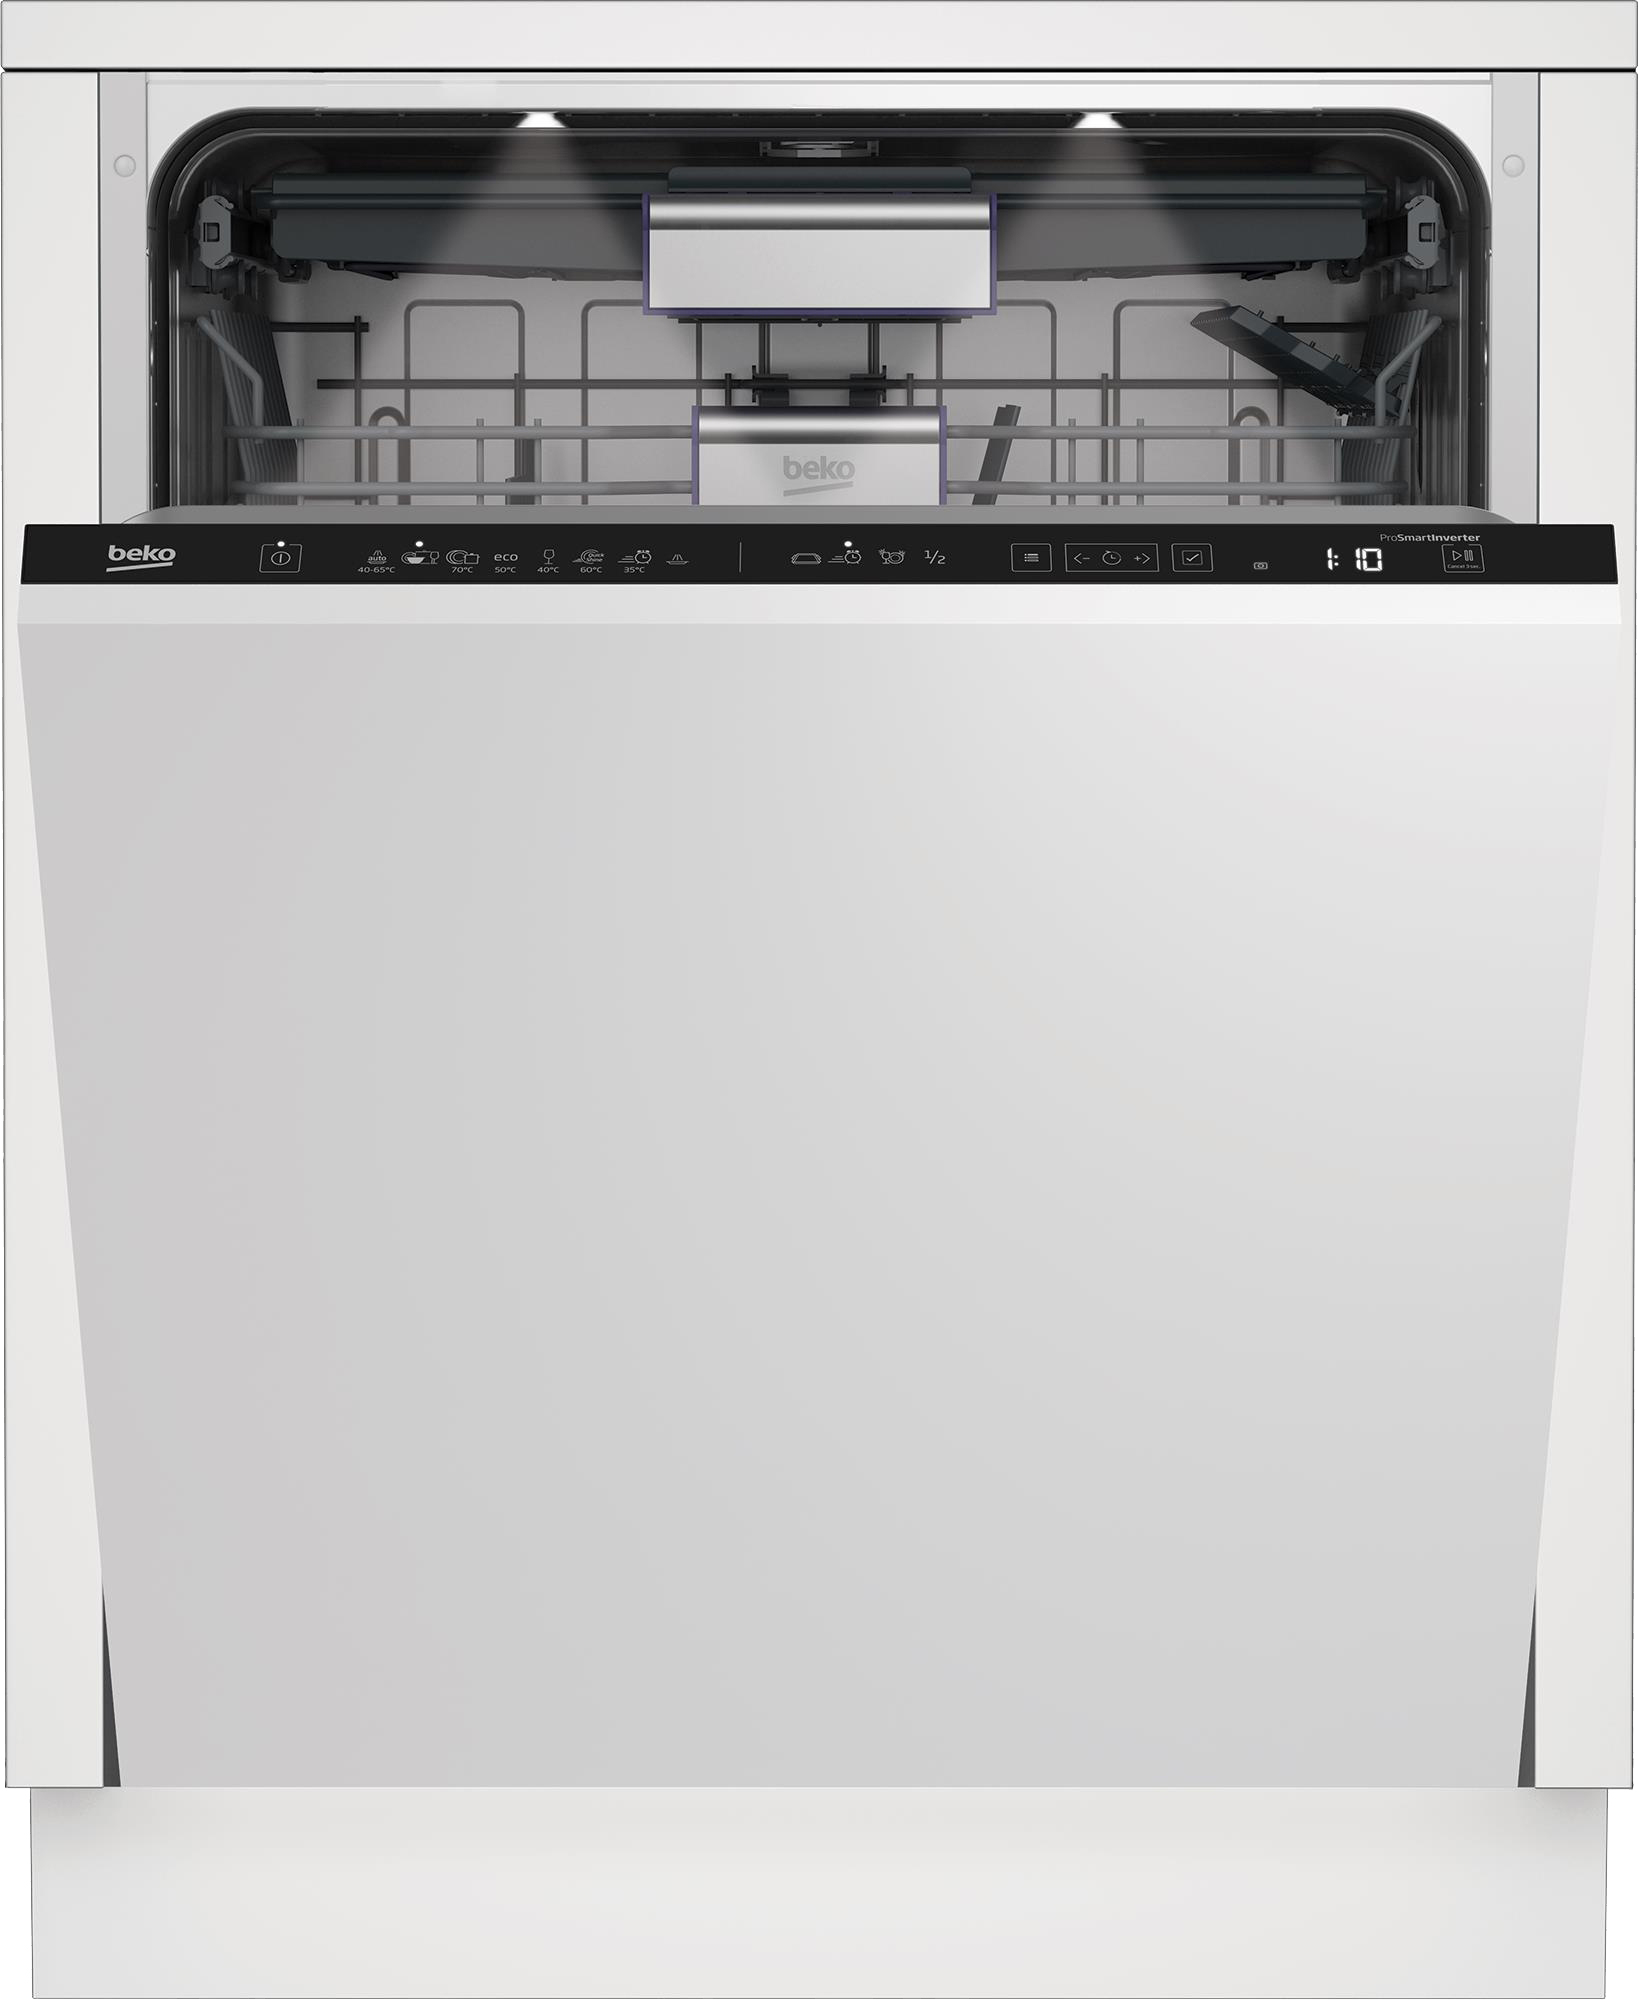 Посудомоечная машина Beko DIN48534